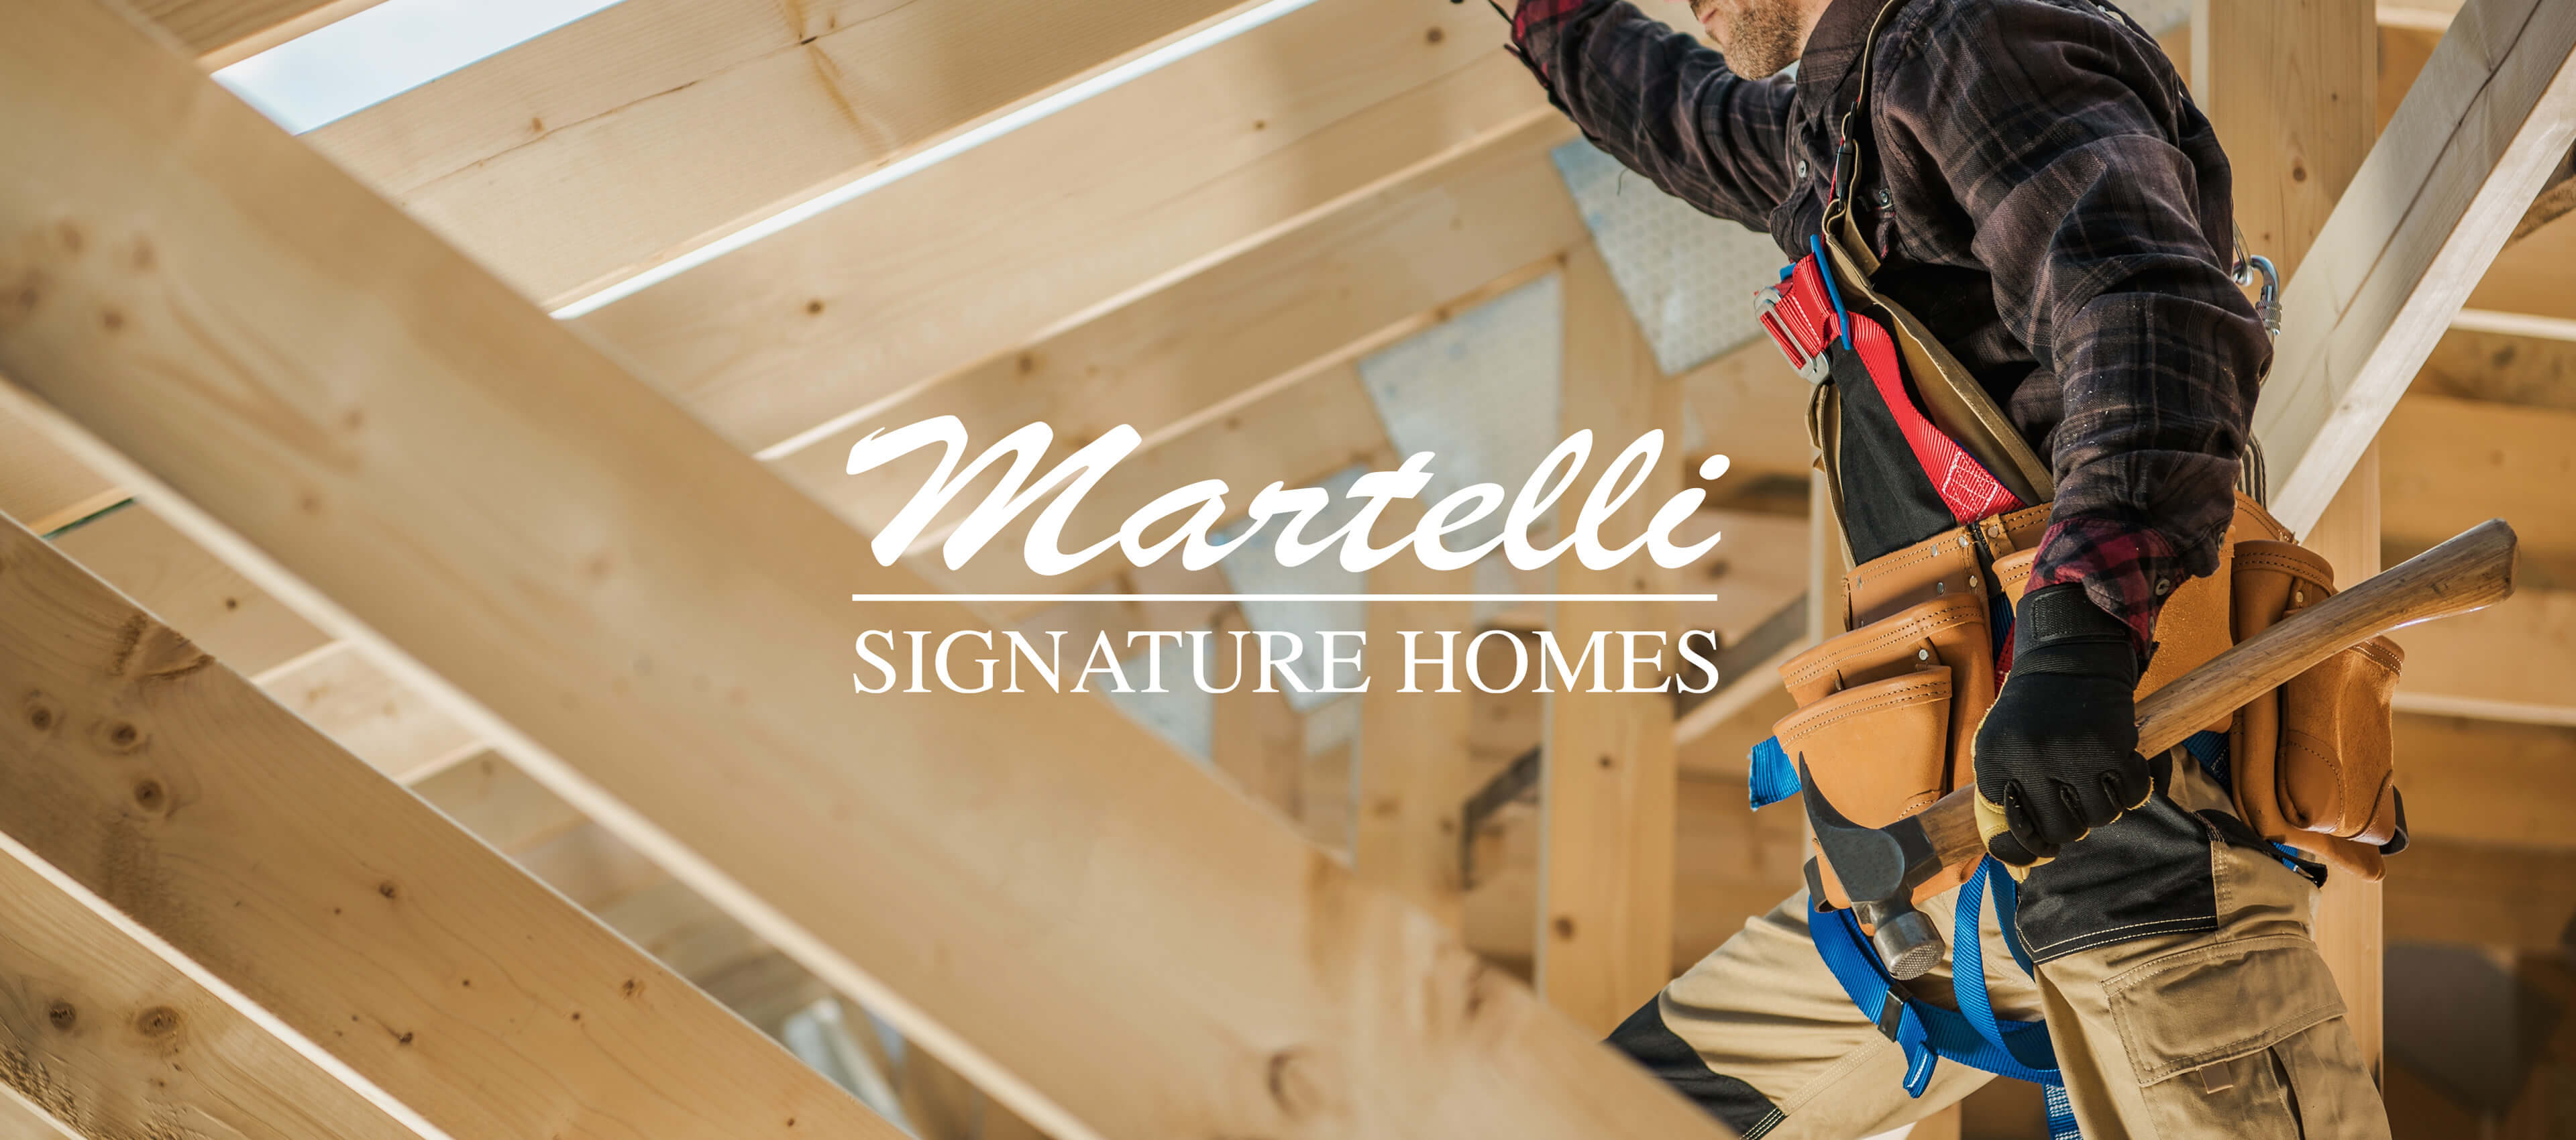 Martelli Signature Homes